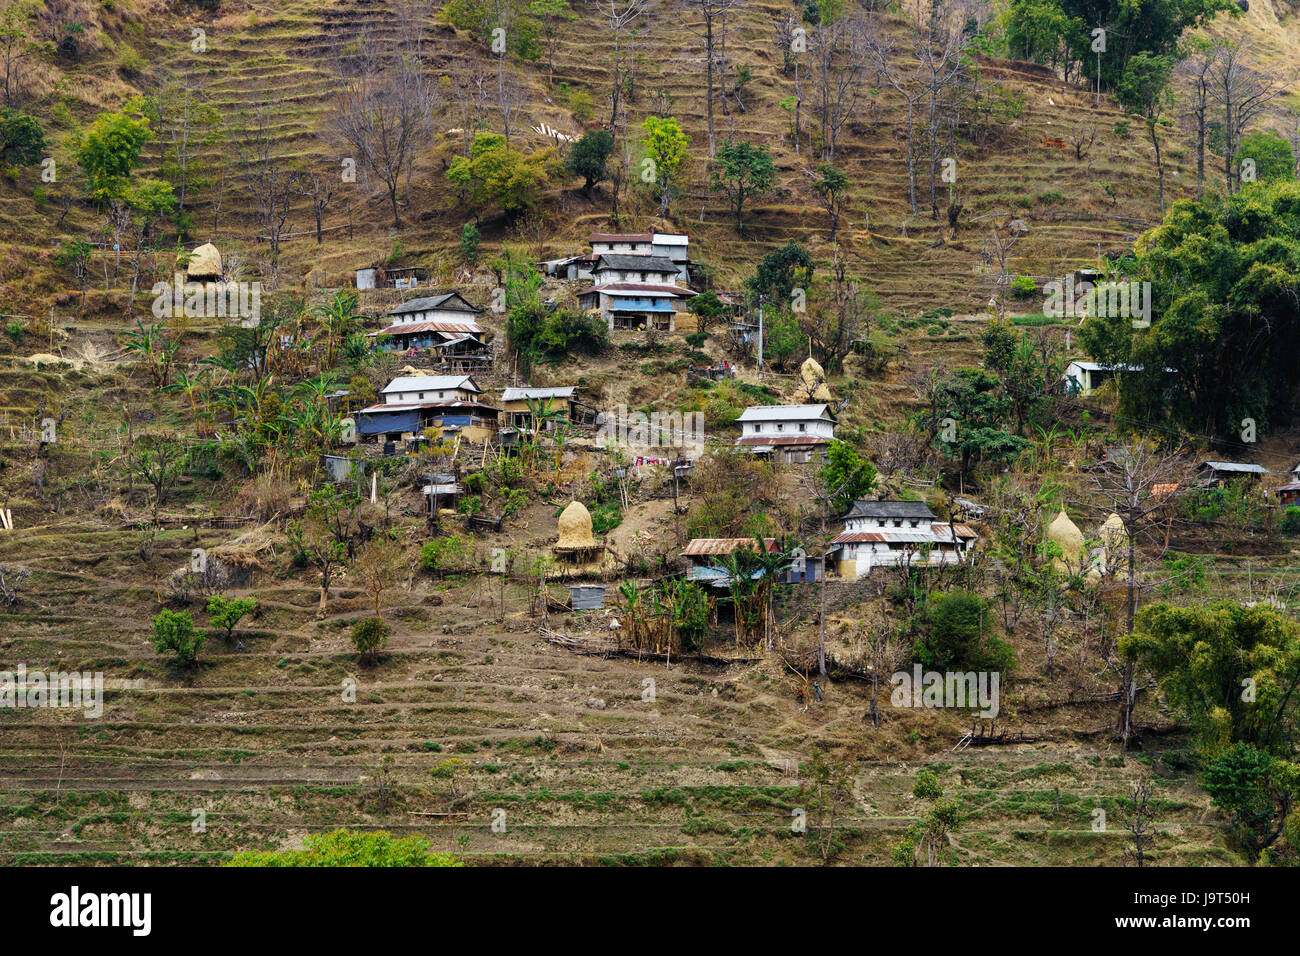 Las casas construidas en la ladera de una colina cerca de Bahundanda, distrito Lamjung en Nepal. Foto de stock